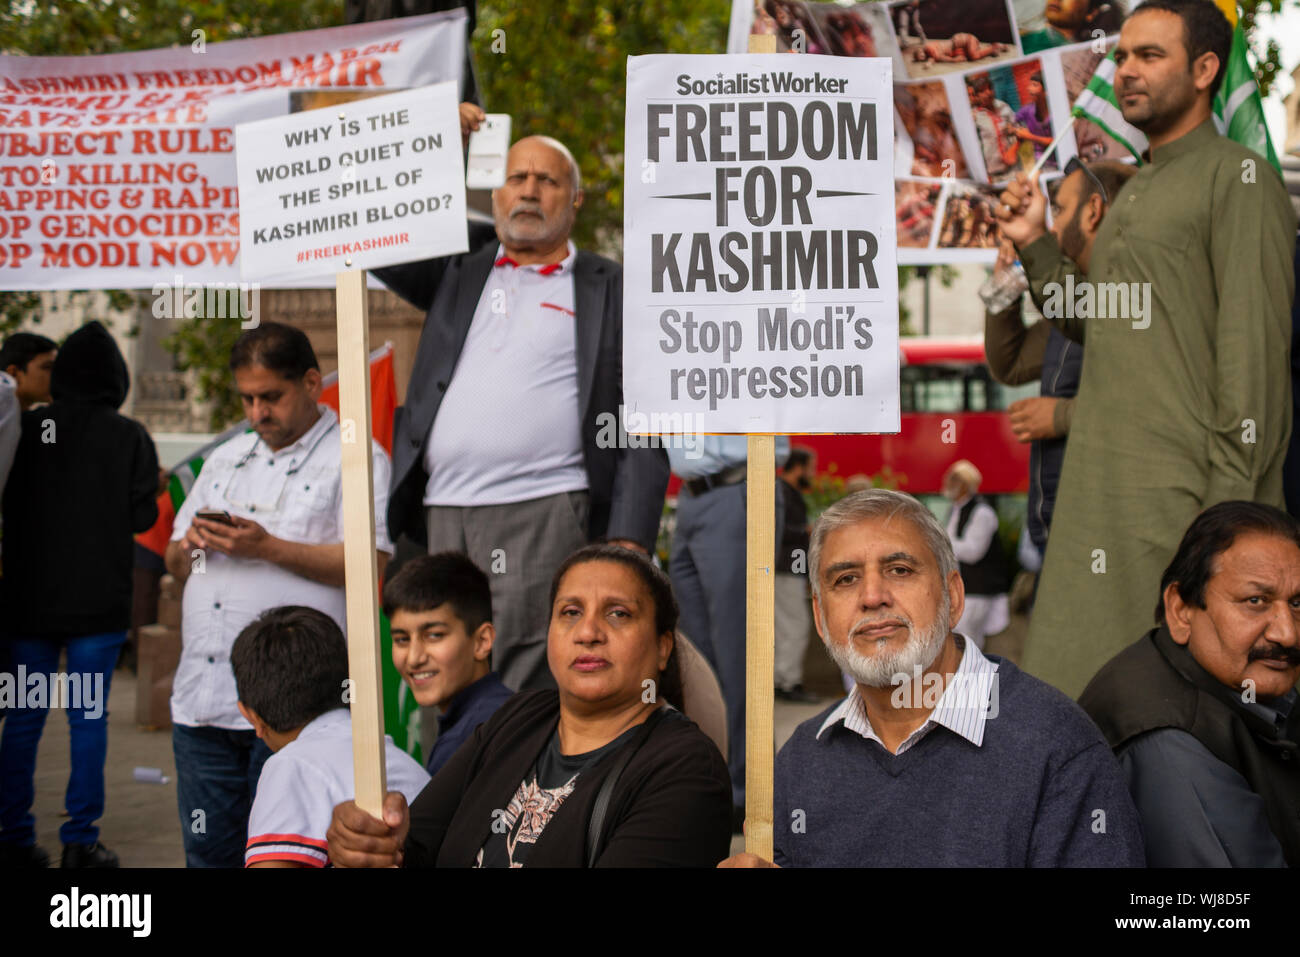 Ein Protest findet in Westminster, London, UK Demonstration gegen die Indische Besetzung von Jammu und Kaschmir und behauptet, dass Tausende getötet wurden und durch die indische Armee verletzt. Am 5. August Artikel 370 -, die die Rechte der Bevölkerung in den geschützten Bereich - wurde durch die BJP-Regierung widerrufen Stockfoto